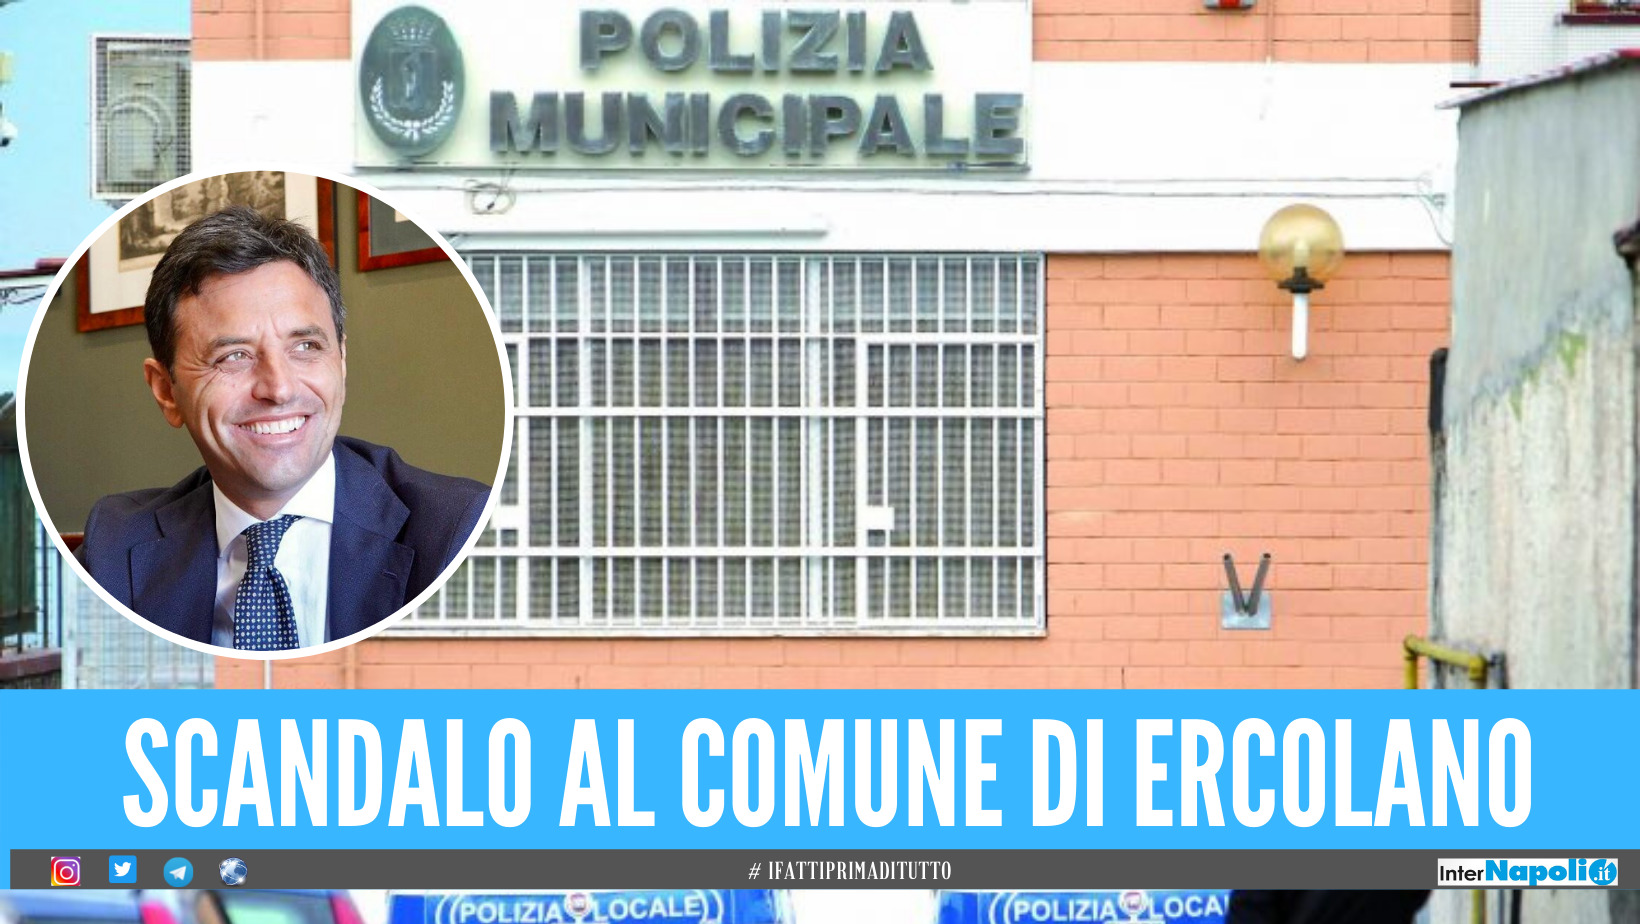 Soldi per sbloccare le opere abusive a Ercolano: arrestati vigile urbano e geometra